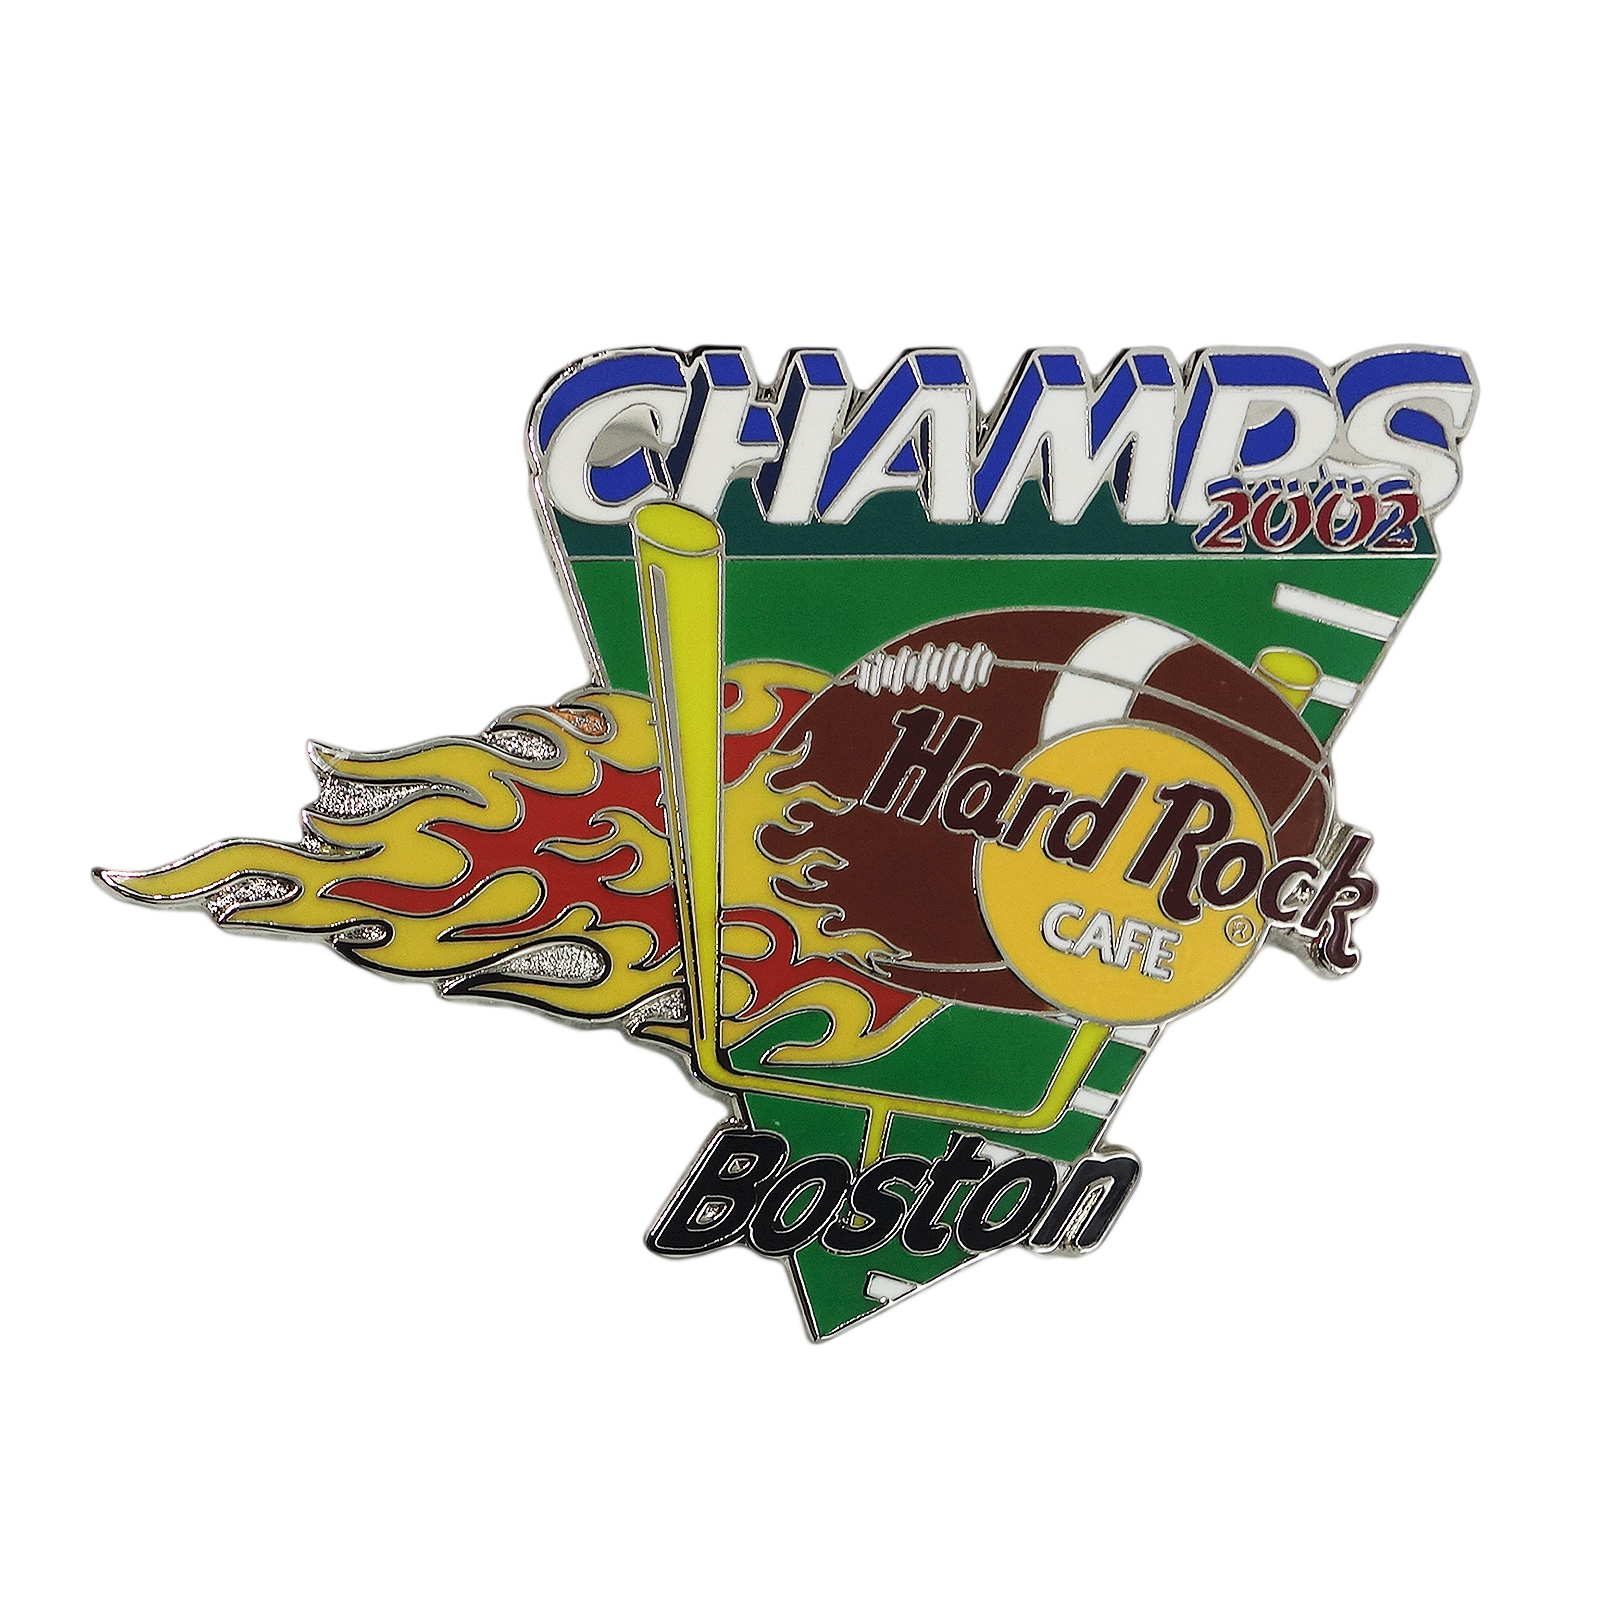 Hard Rock CAFE フットボール CHAMPS ピンズ ハードロックカフェ BOSTON